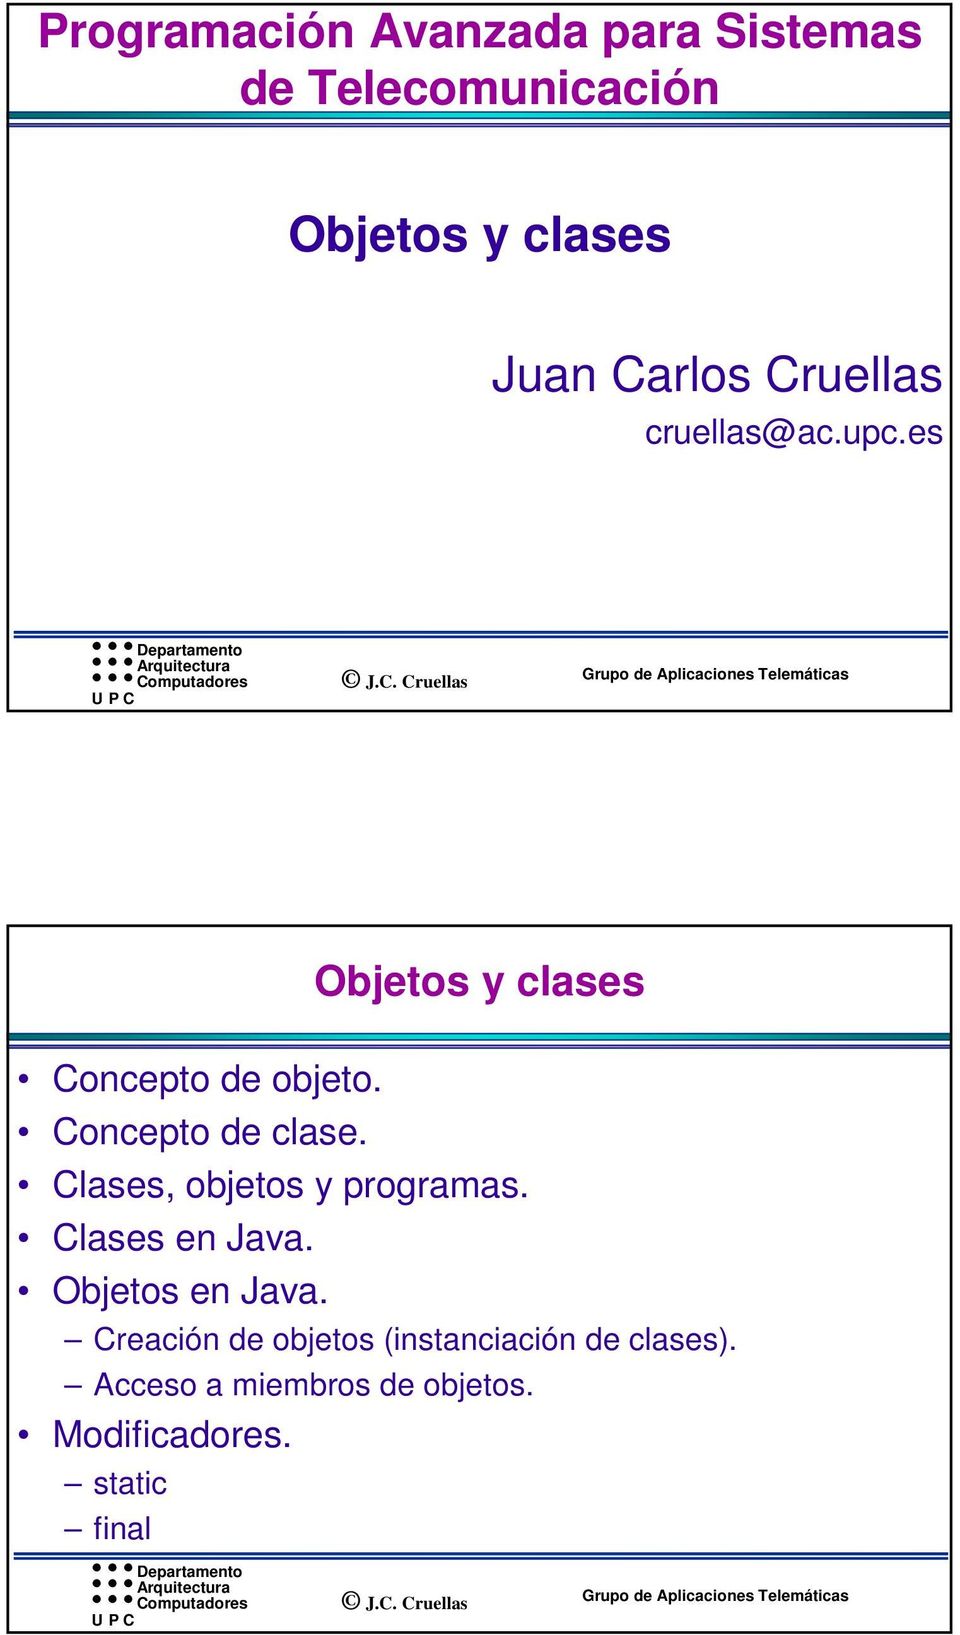 Concepto de clase. Clases, objetos y programas. Clases en Java. Objetos en Java.